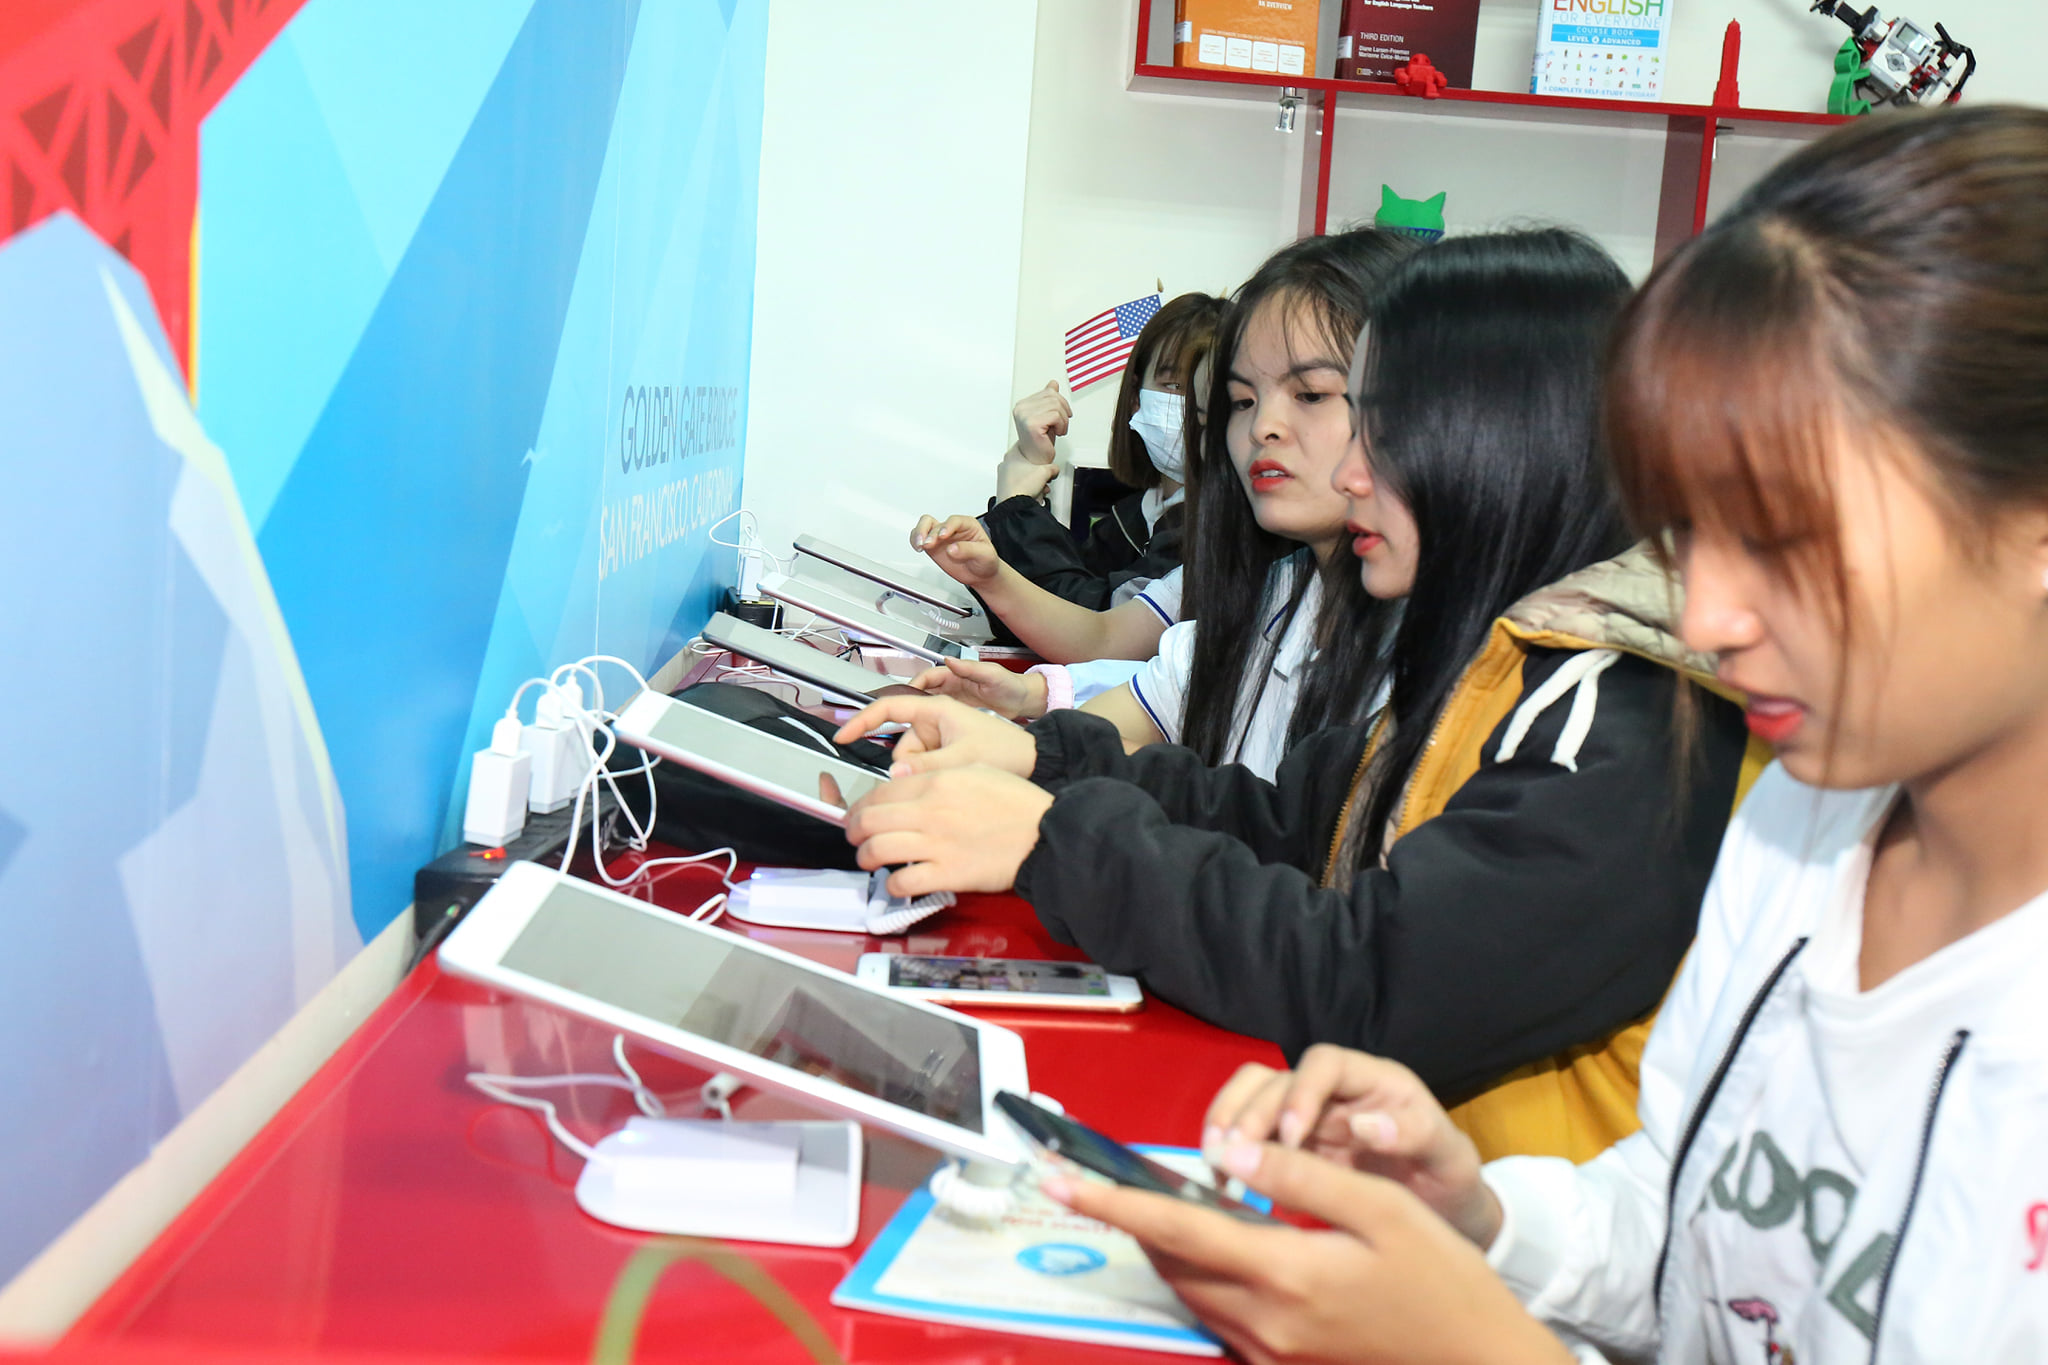 Trung tâm Số - Đại học Thái Nguyên: Hoàn thiện và cung cấp một số sản phẩm, giải pháp công nghệ số